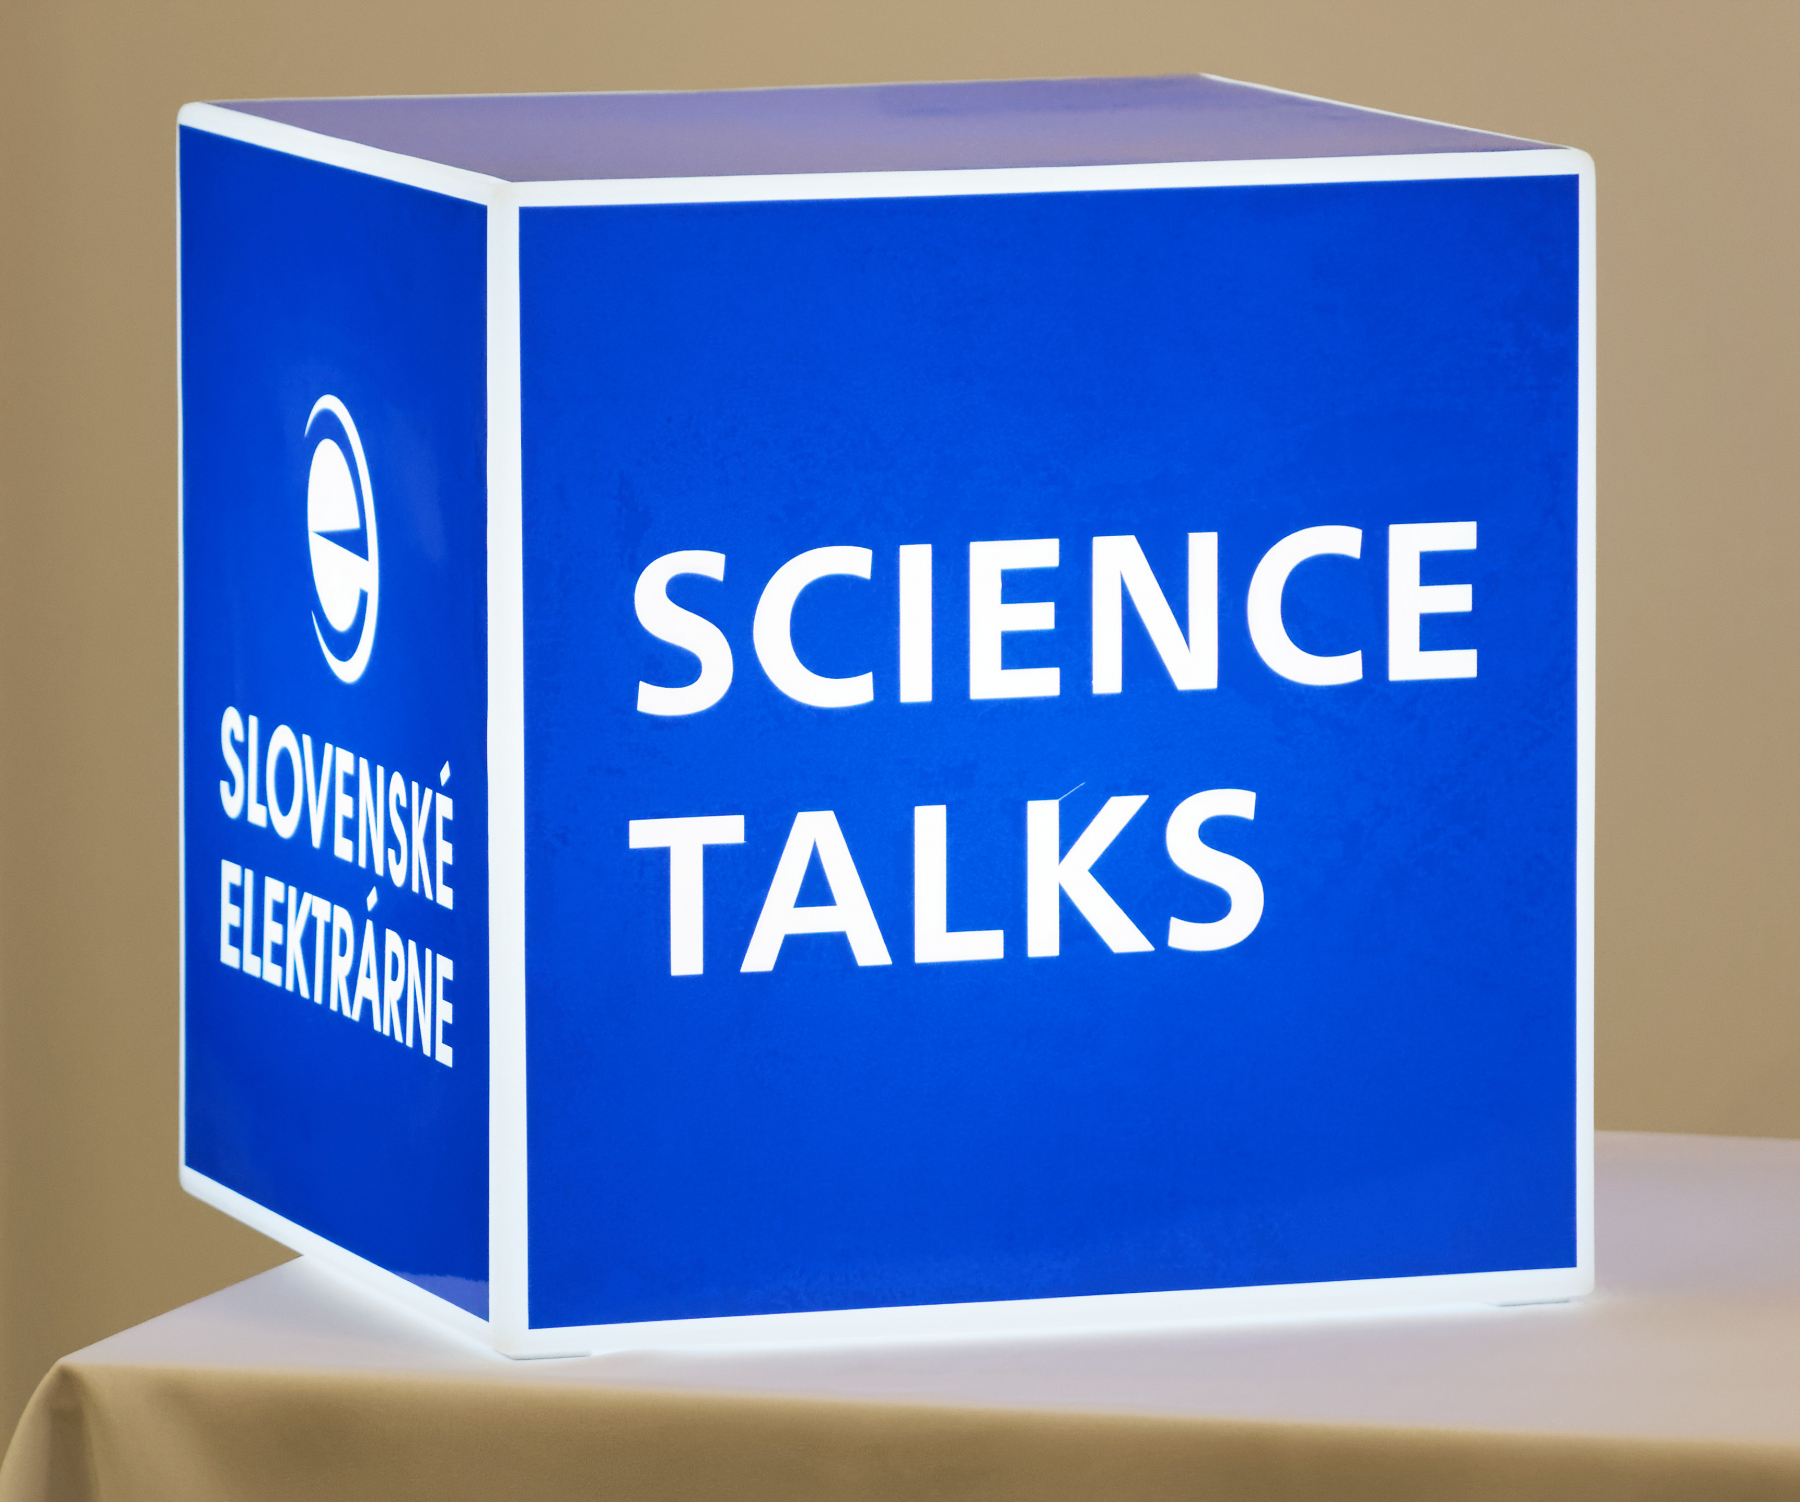 Science talks – TVT 2017